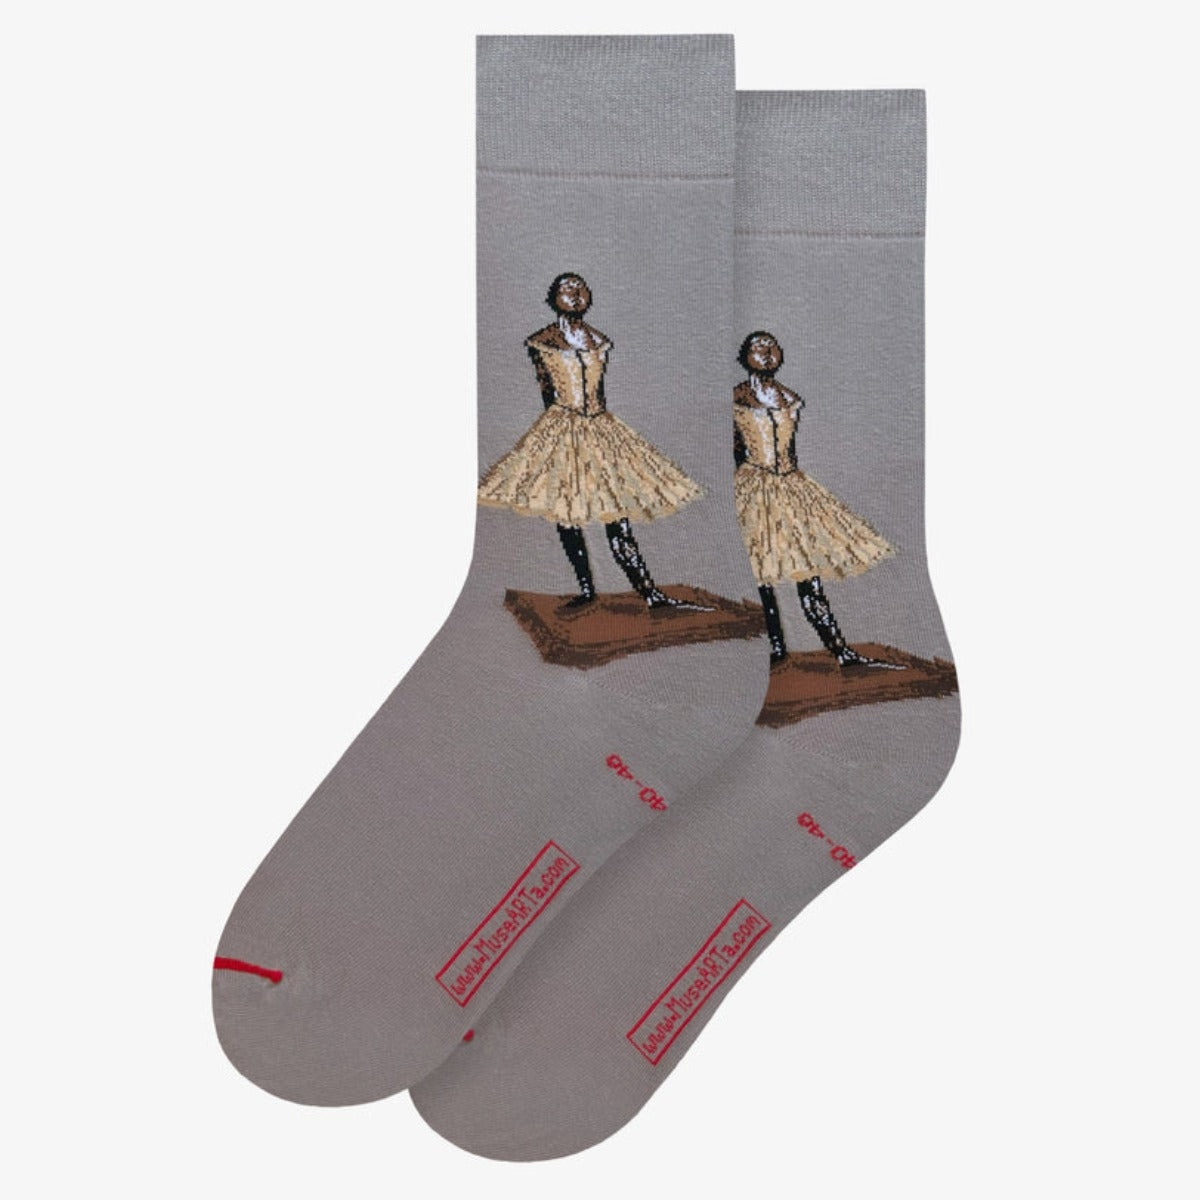 Degas Dancer Socks